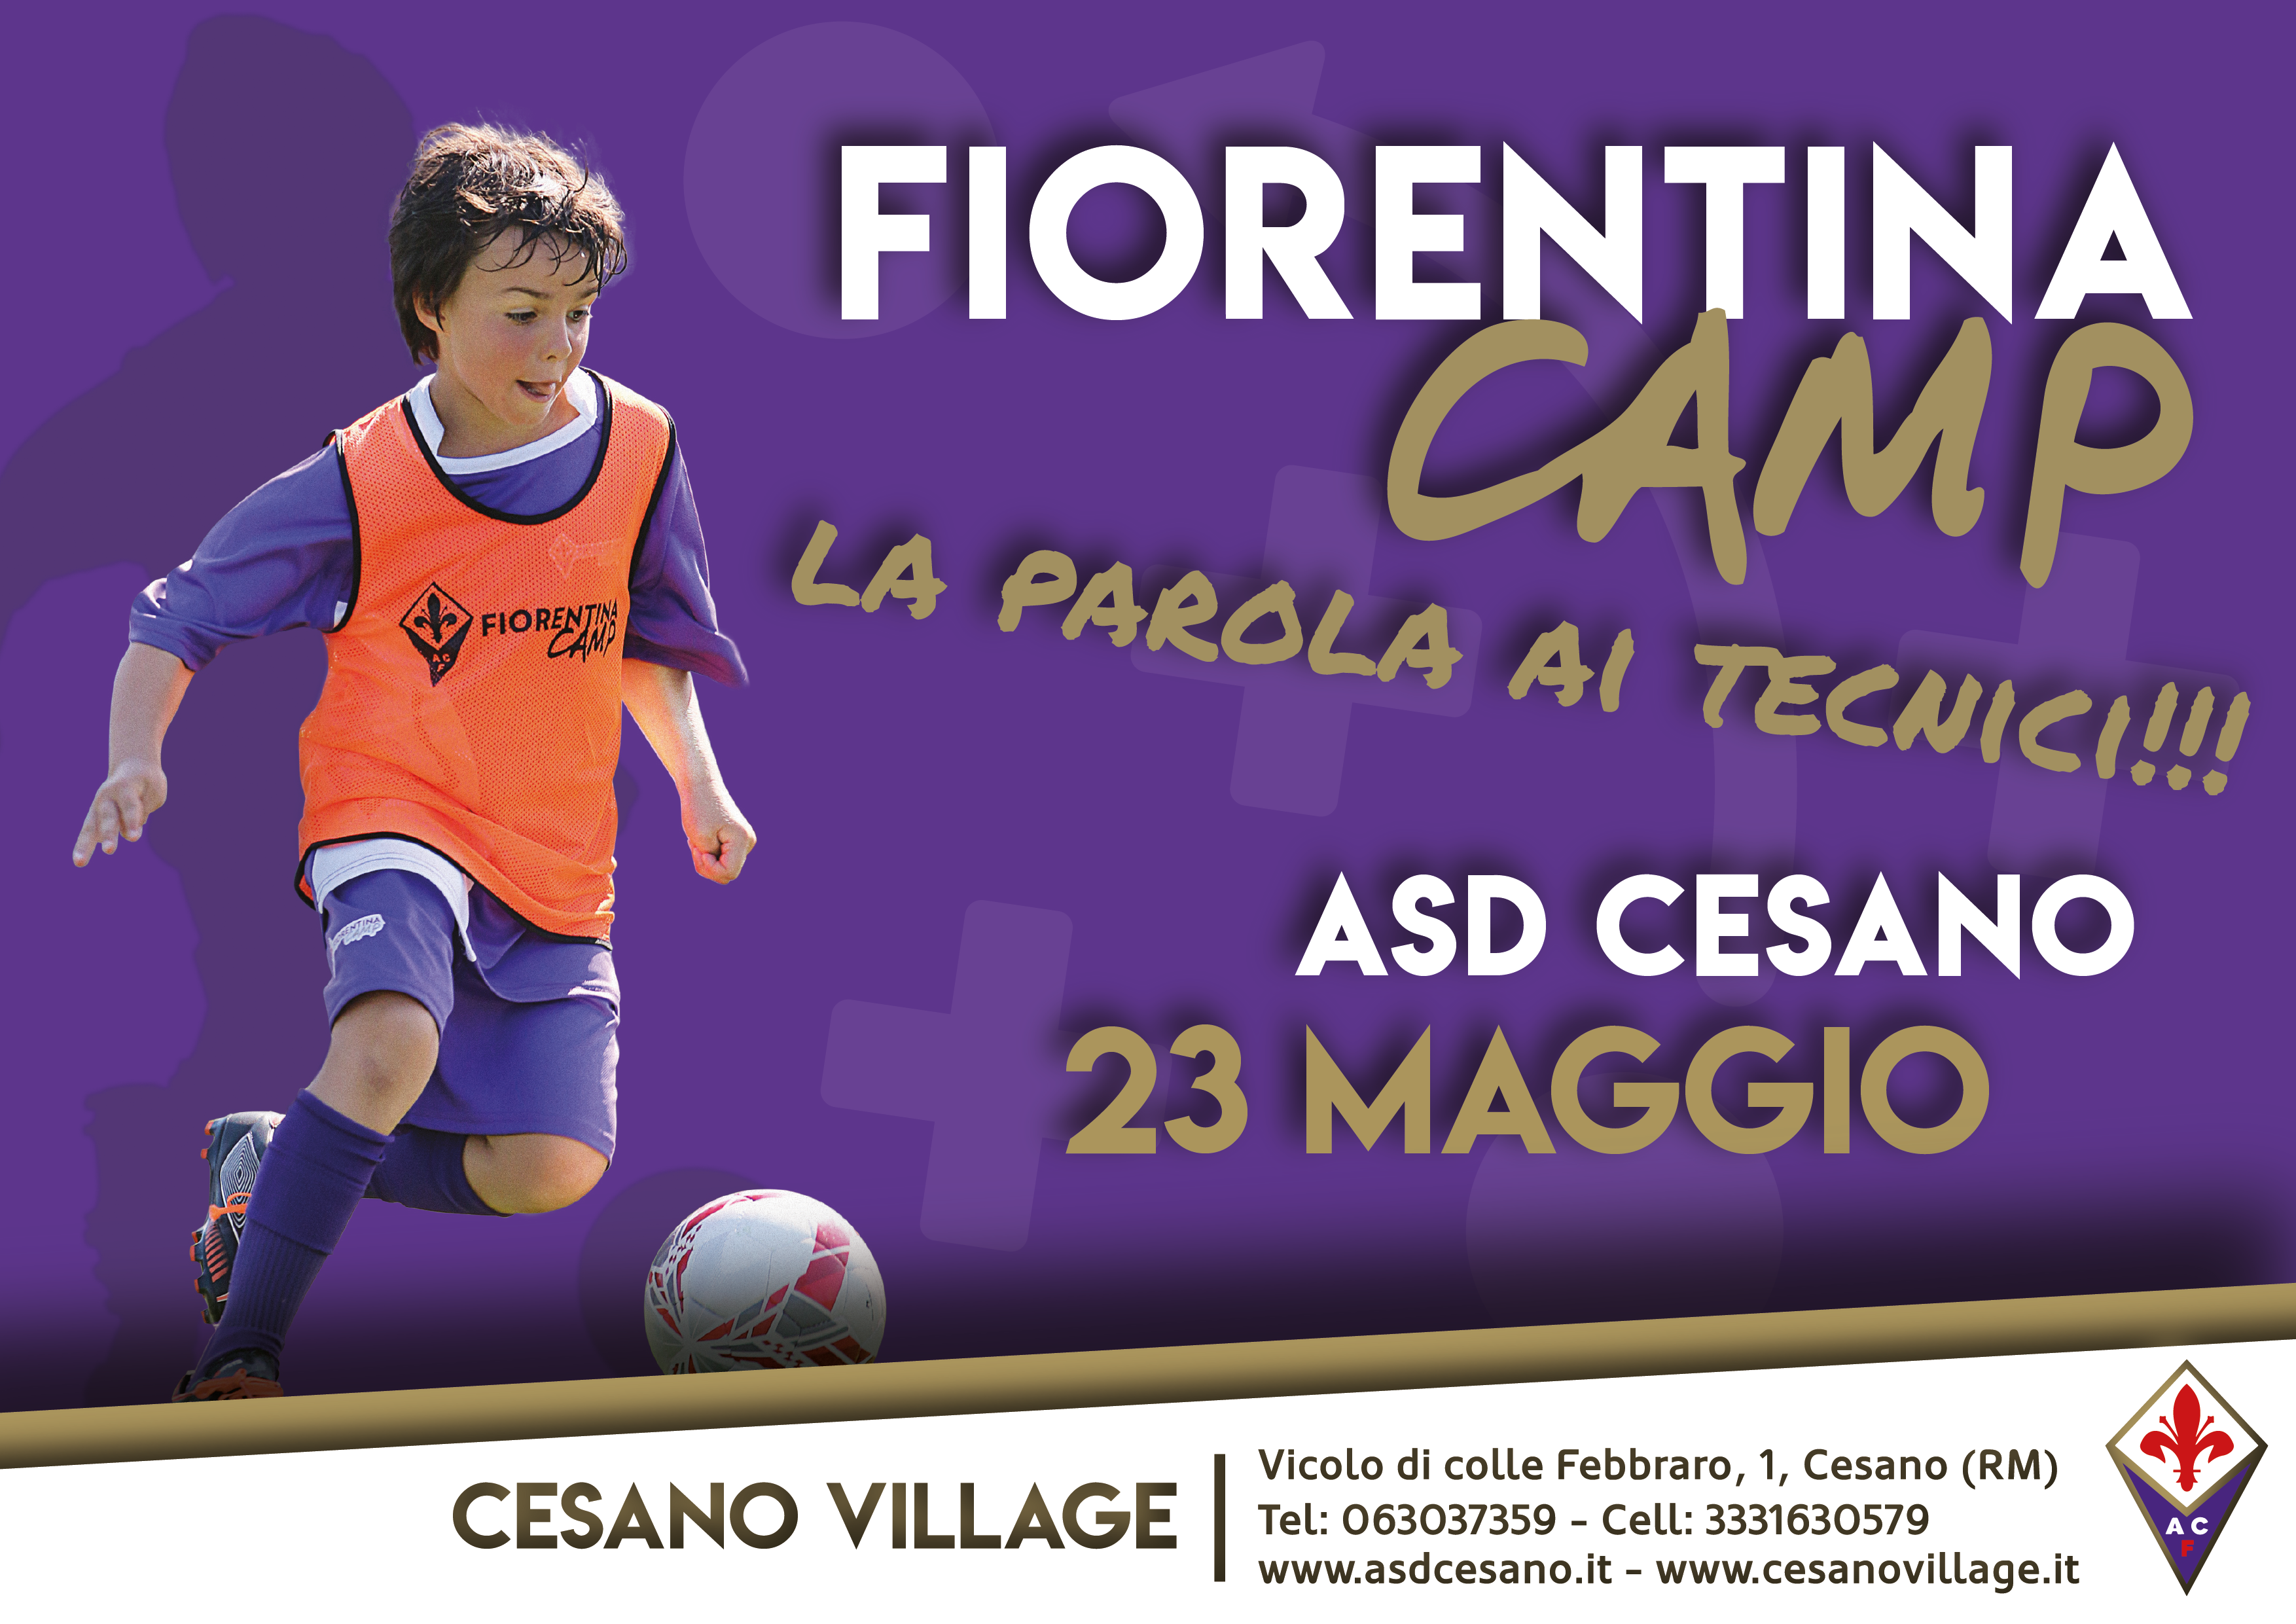 Al momento stai visualizzando Incontro Fiorentina Camp 2017